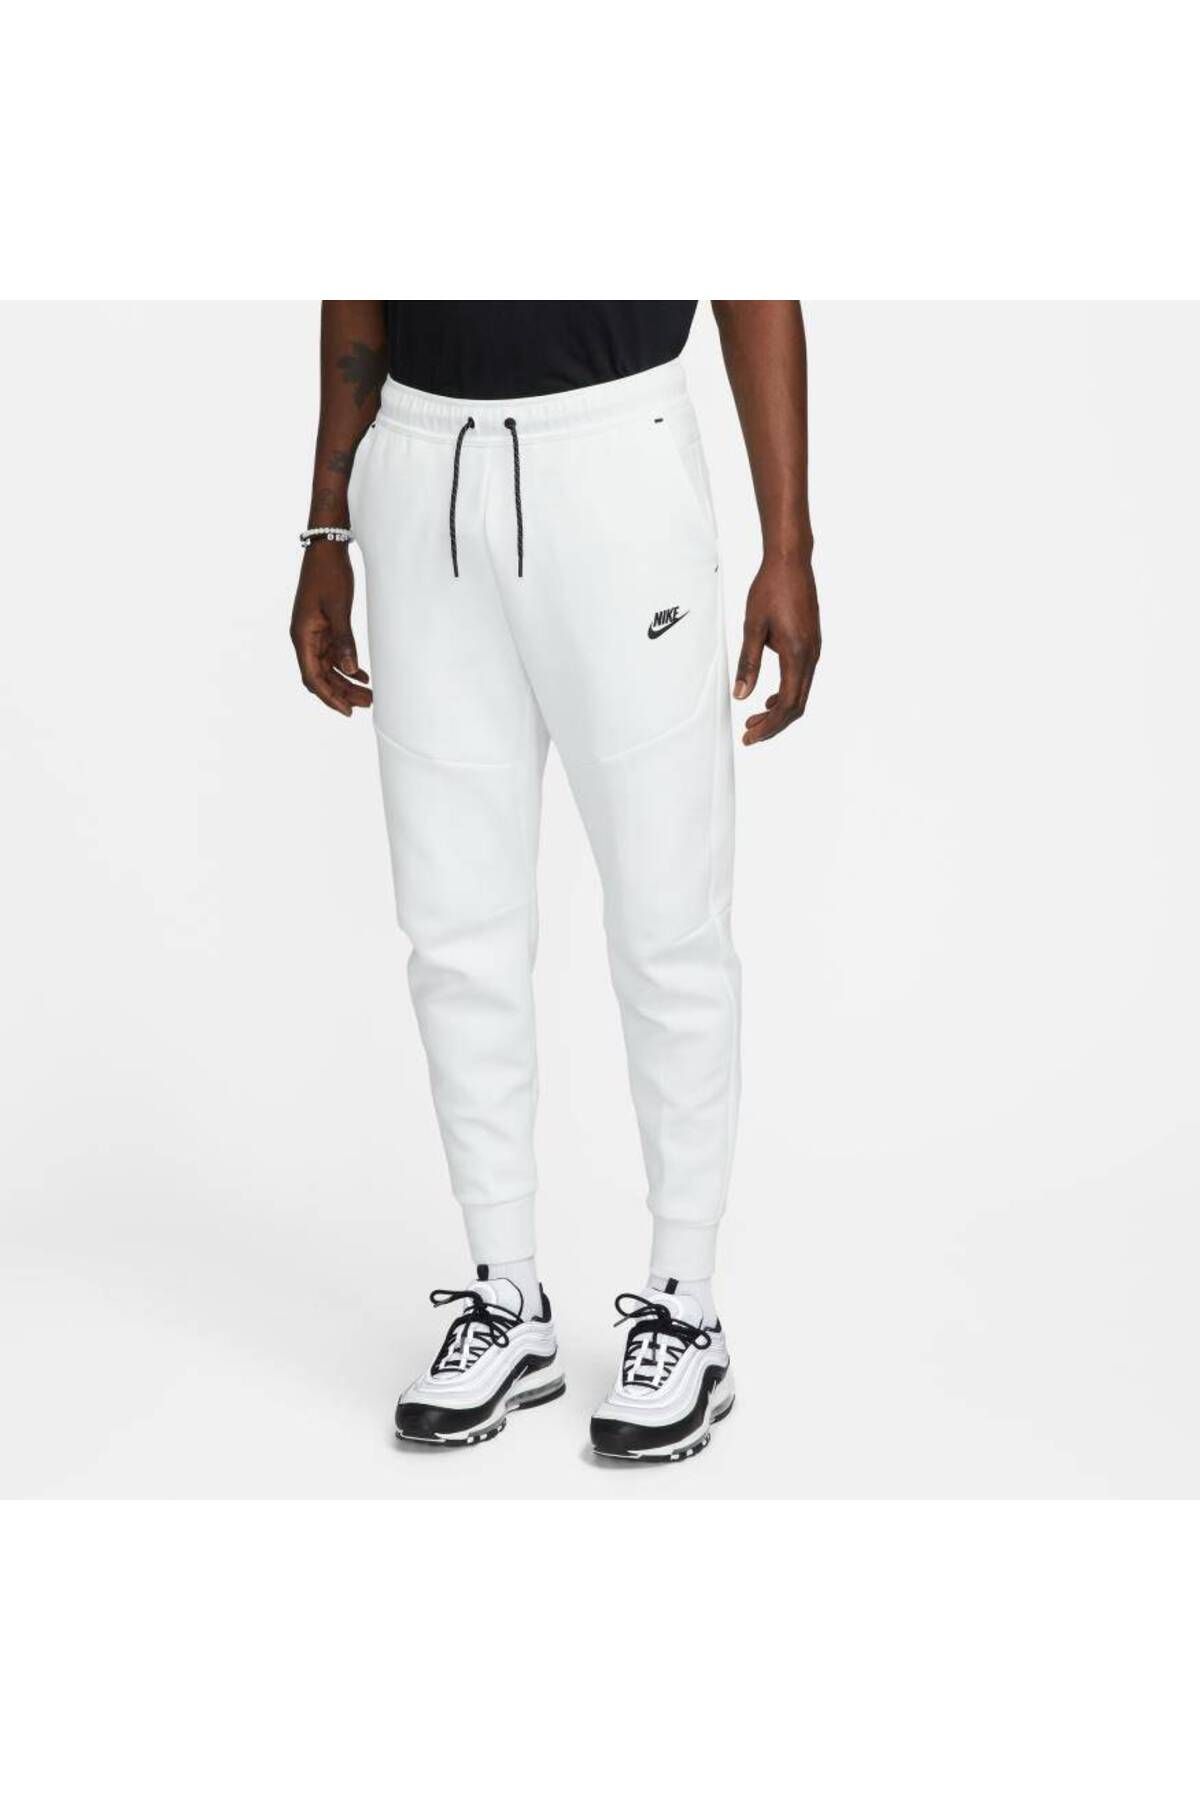 Nike Sportswear Tech Fleece Jogger Beyaz Erkek Eşofman Altı DV0538-121